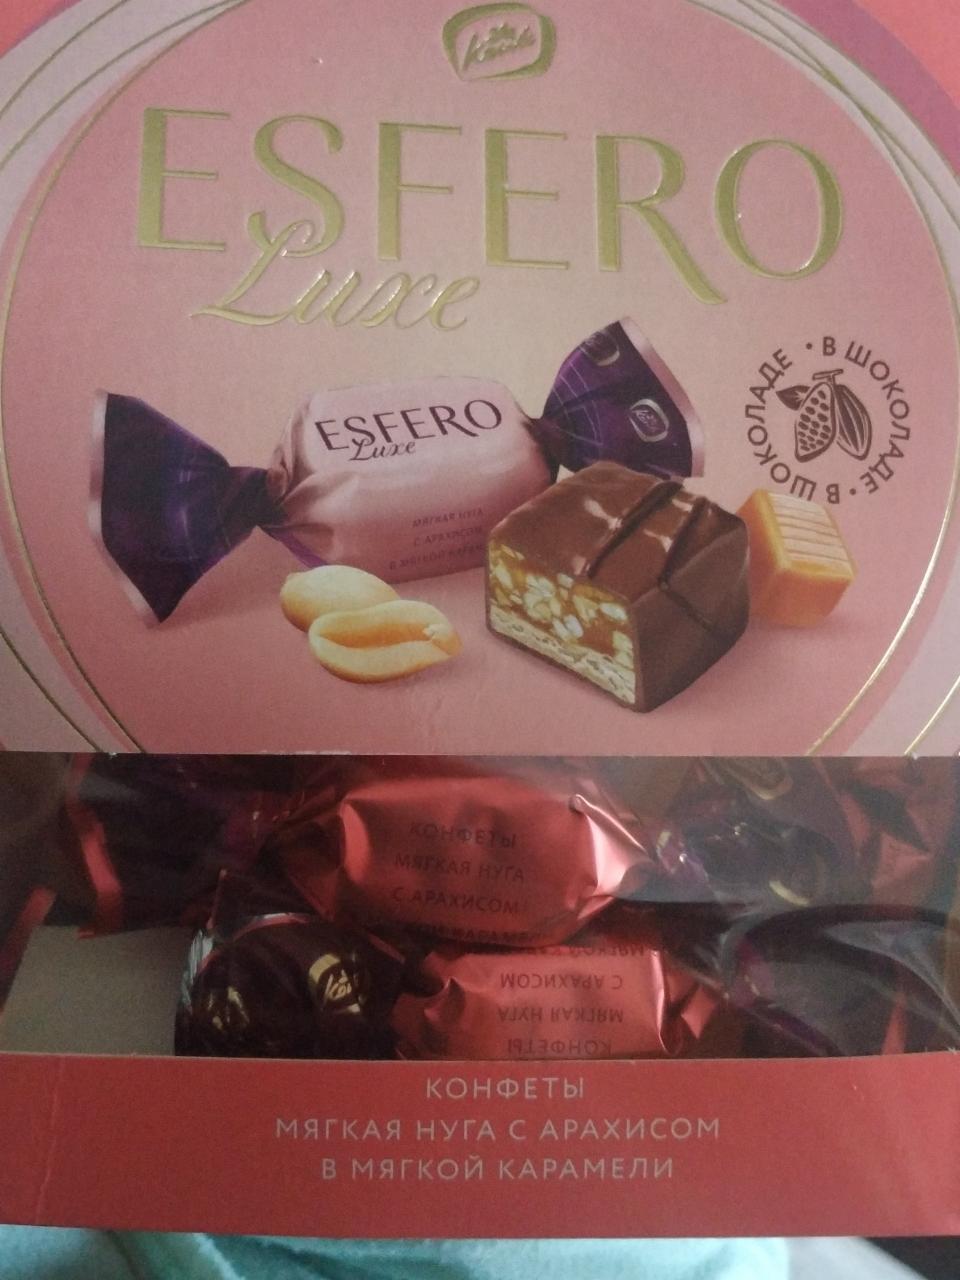 Фото - конфеты ESFERO Luxe Мягкая нуга с арахисом в мягкой карамели